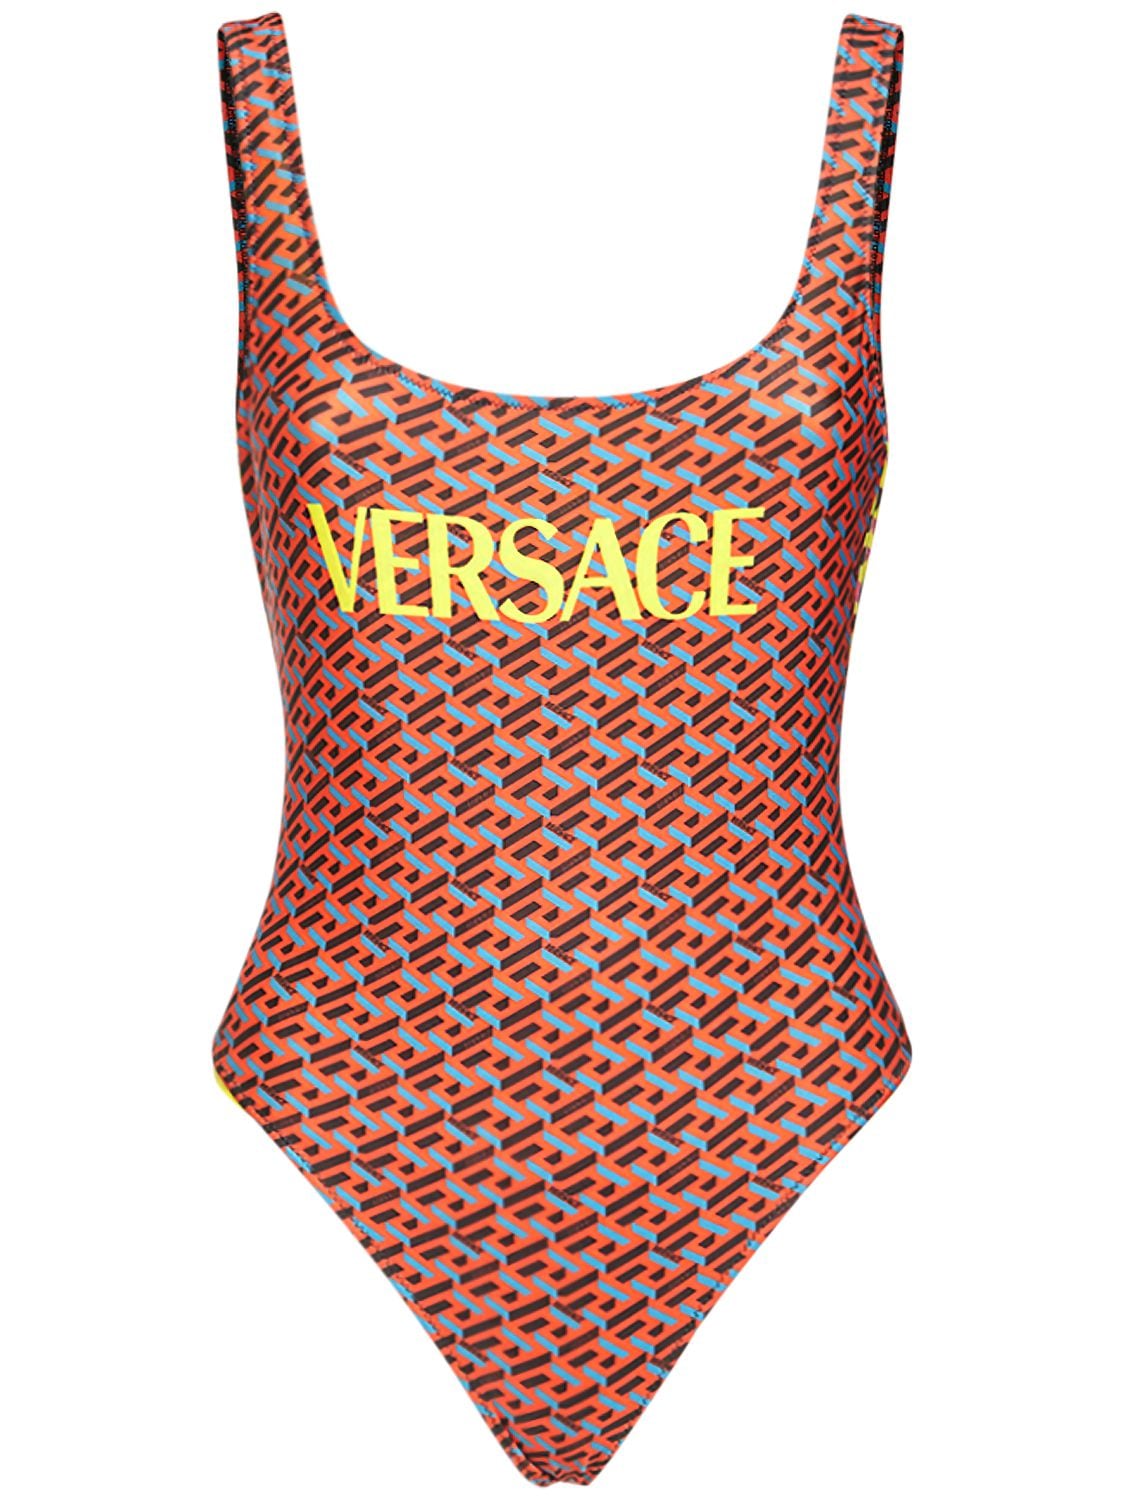 Versace - Recycled lycra logo printed one piece - | Luisaviaroma